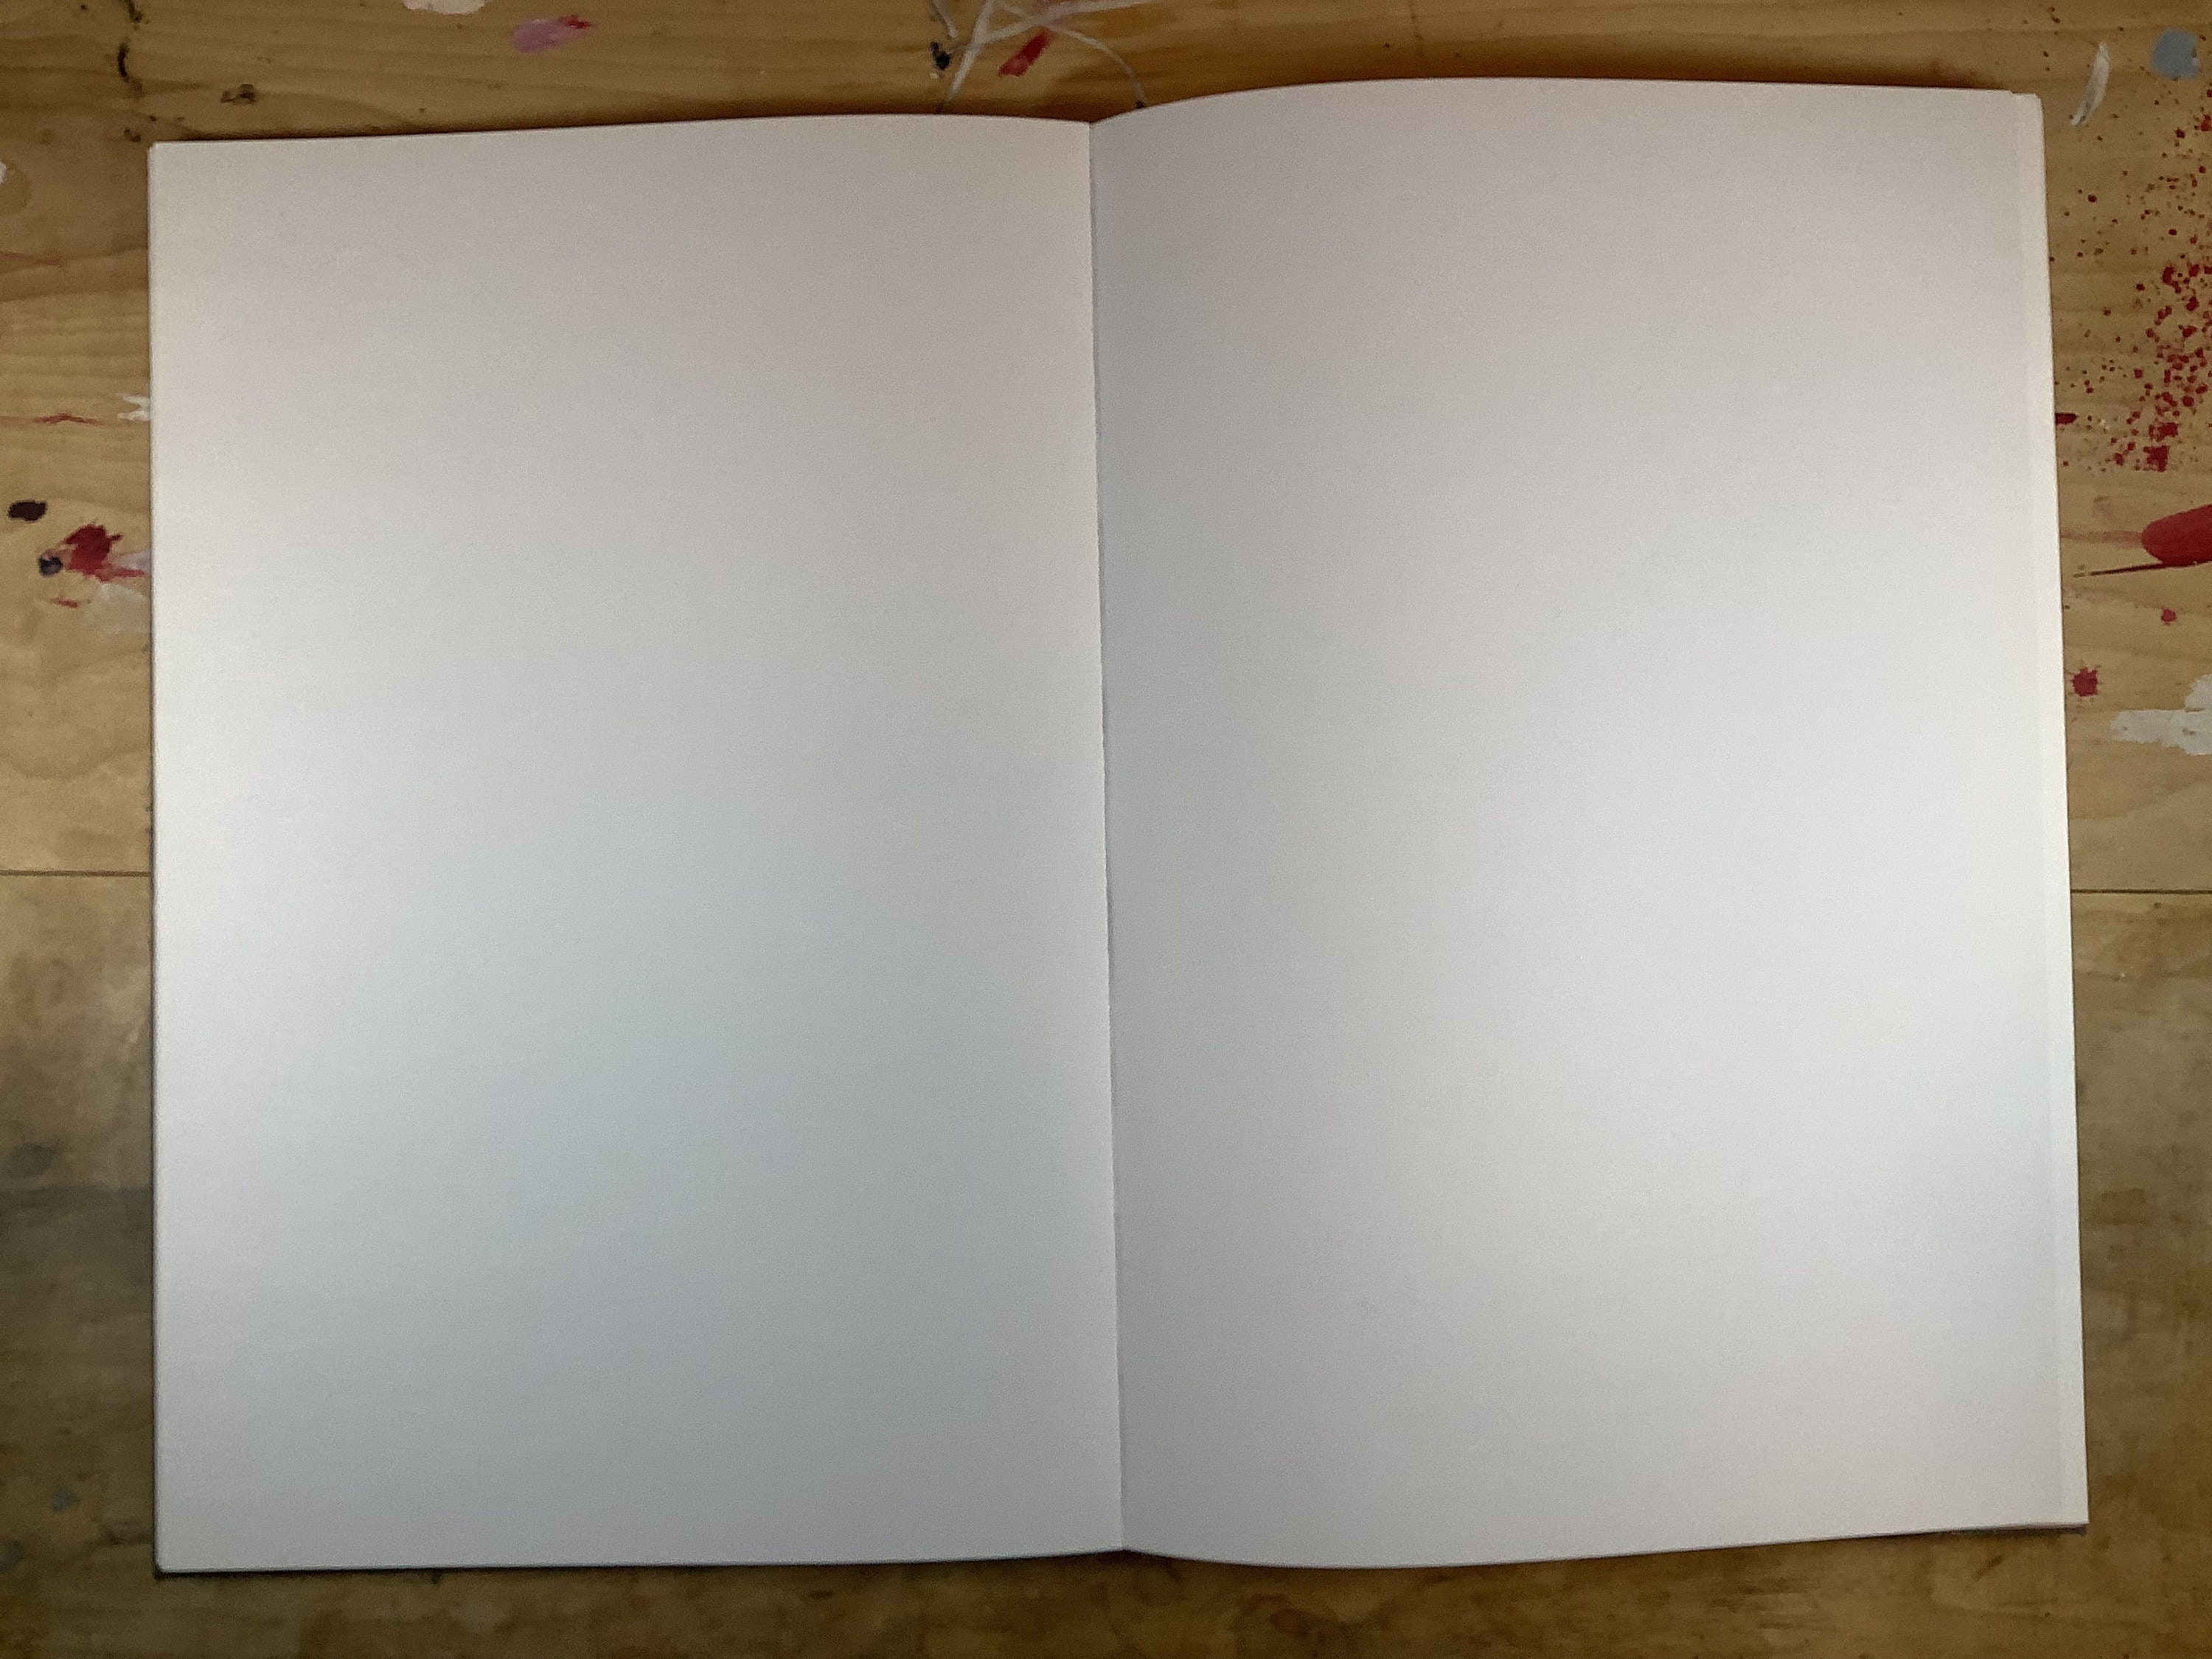 Huge Mixed Media Sketchbook. 18x12 Inches. 100 Lb. Mixed Media